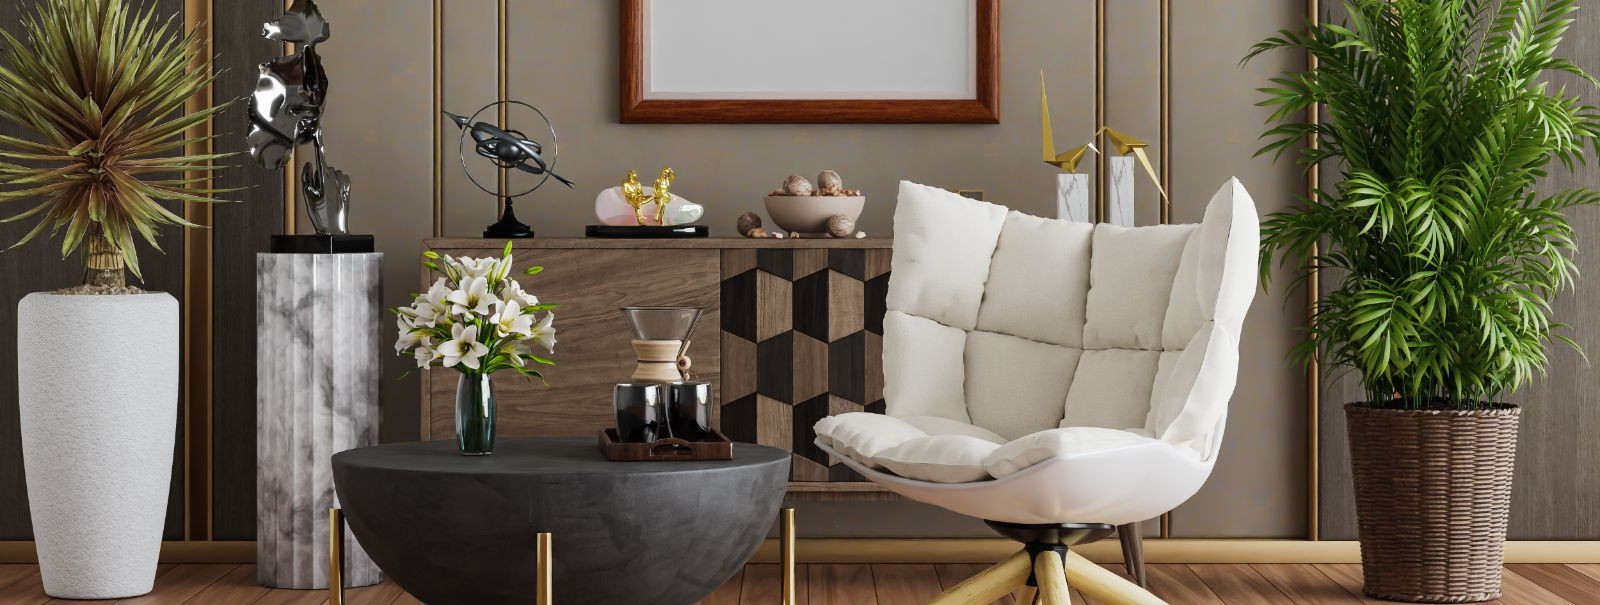 Erilahendustega mööbli disain on kunstivorm, mis muudab kliendi visiooni käegakatsutavaks mööbliesemeks. Erinevalt masstoodangust on eritellimusel valminud esem